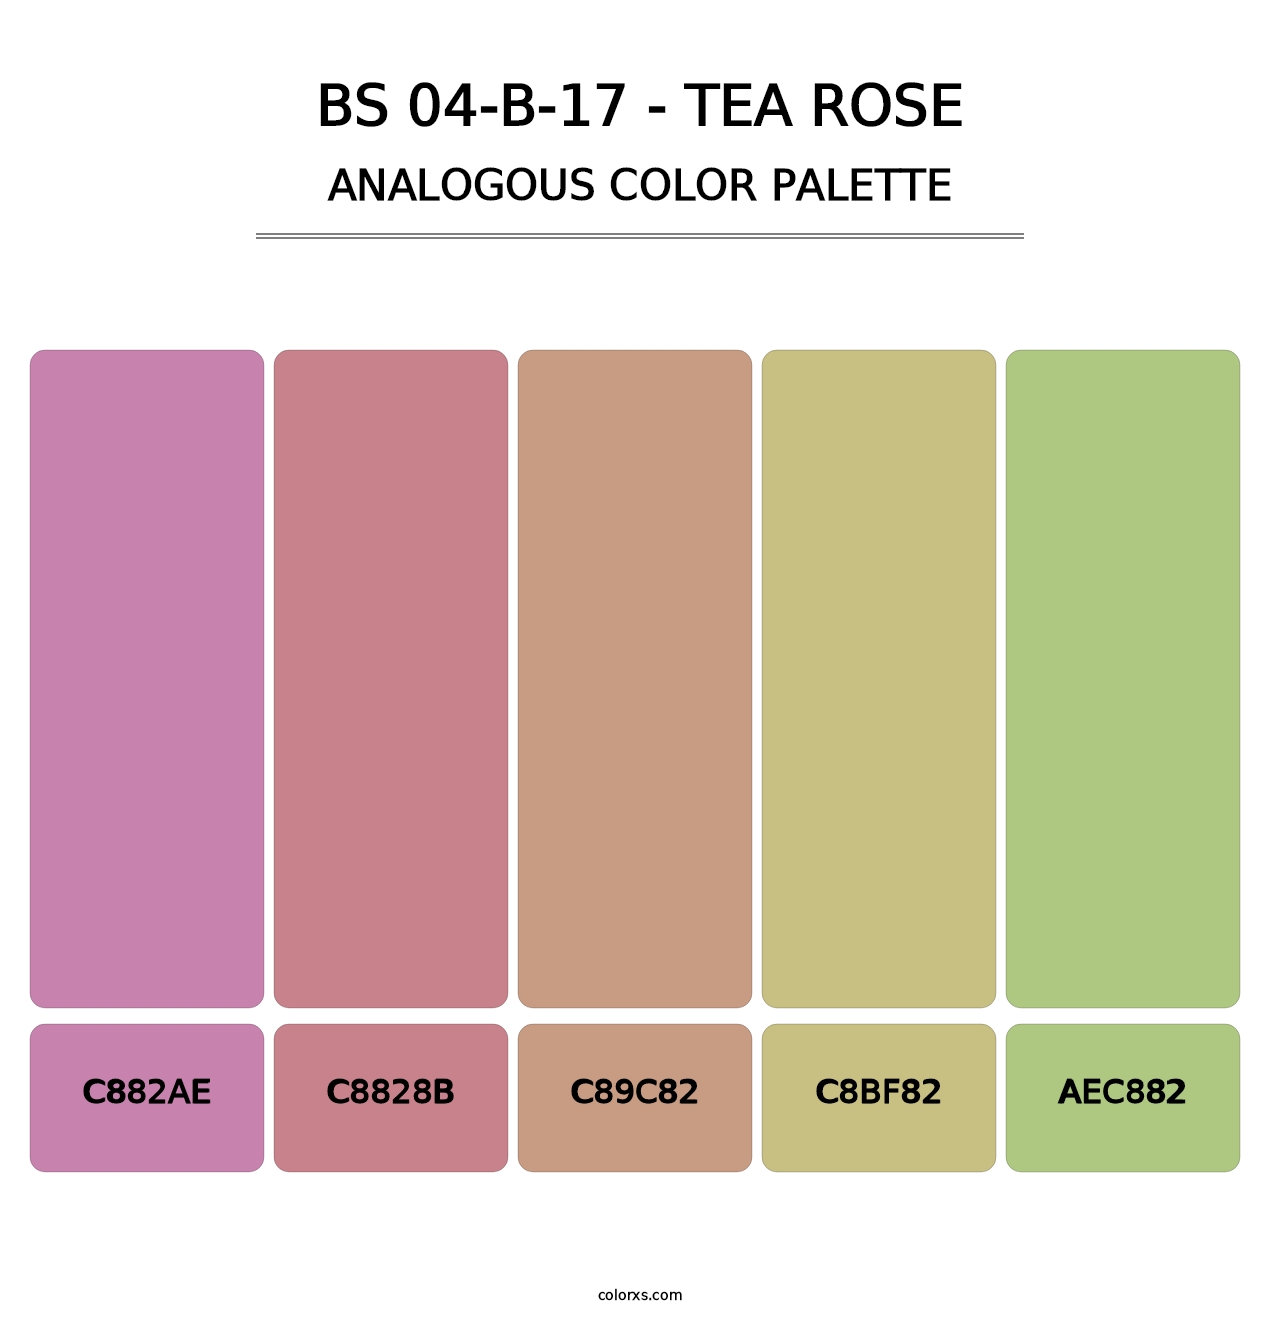 BS 04-B-17 - Tea Rose - Analogous Color Palette